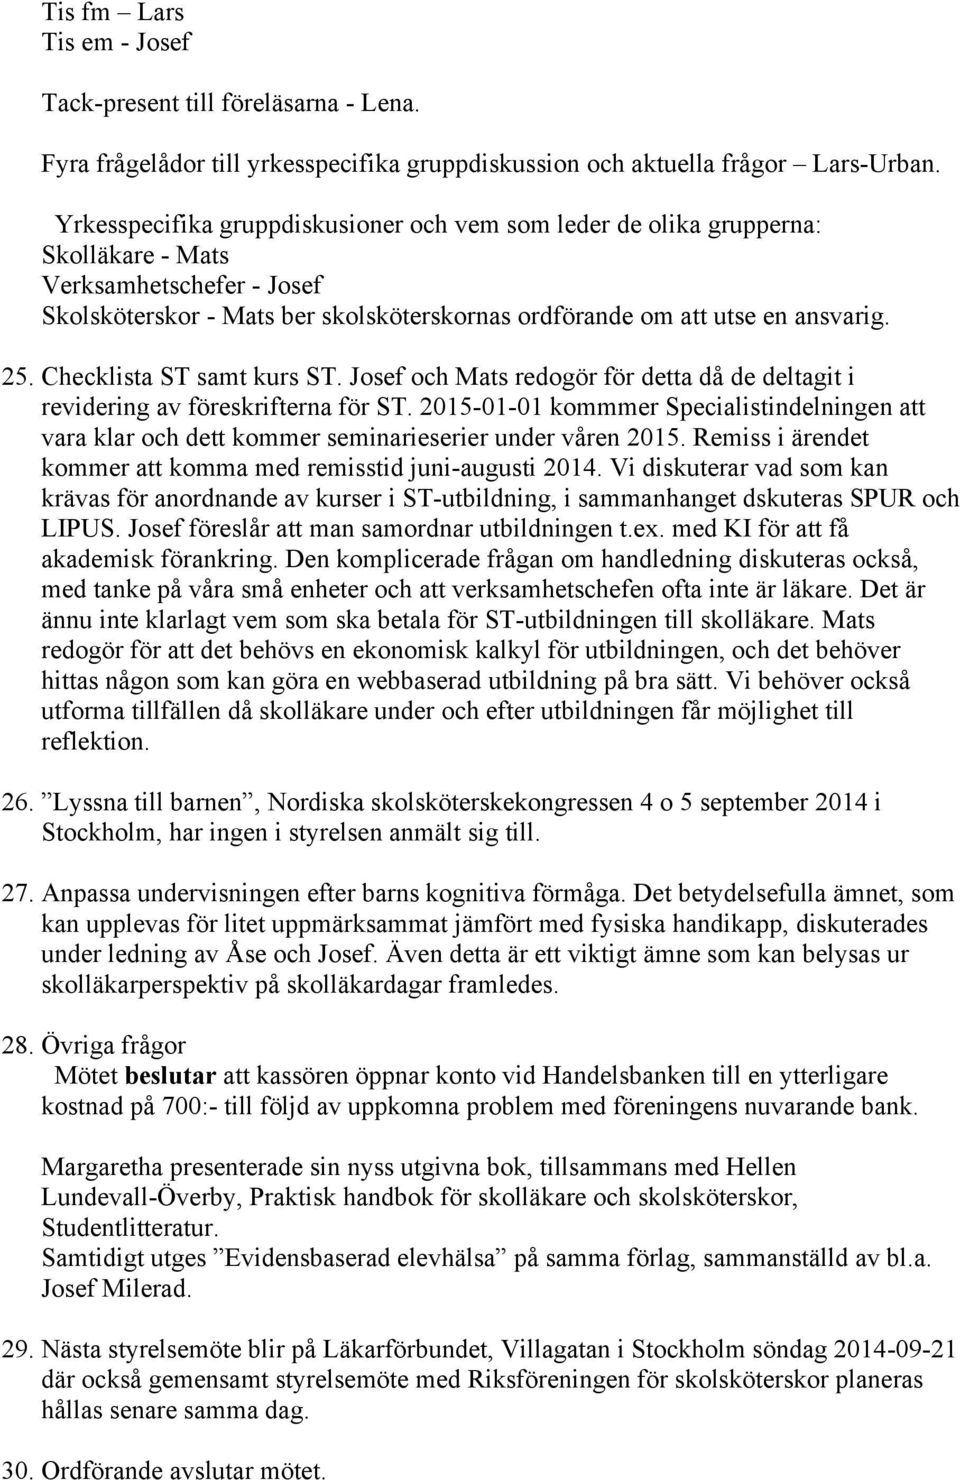 Checklista ST samt kurs ST. Josef och Mats redogör för detta då de deltagit i revidering av föreskrifterna för ST.